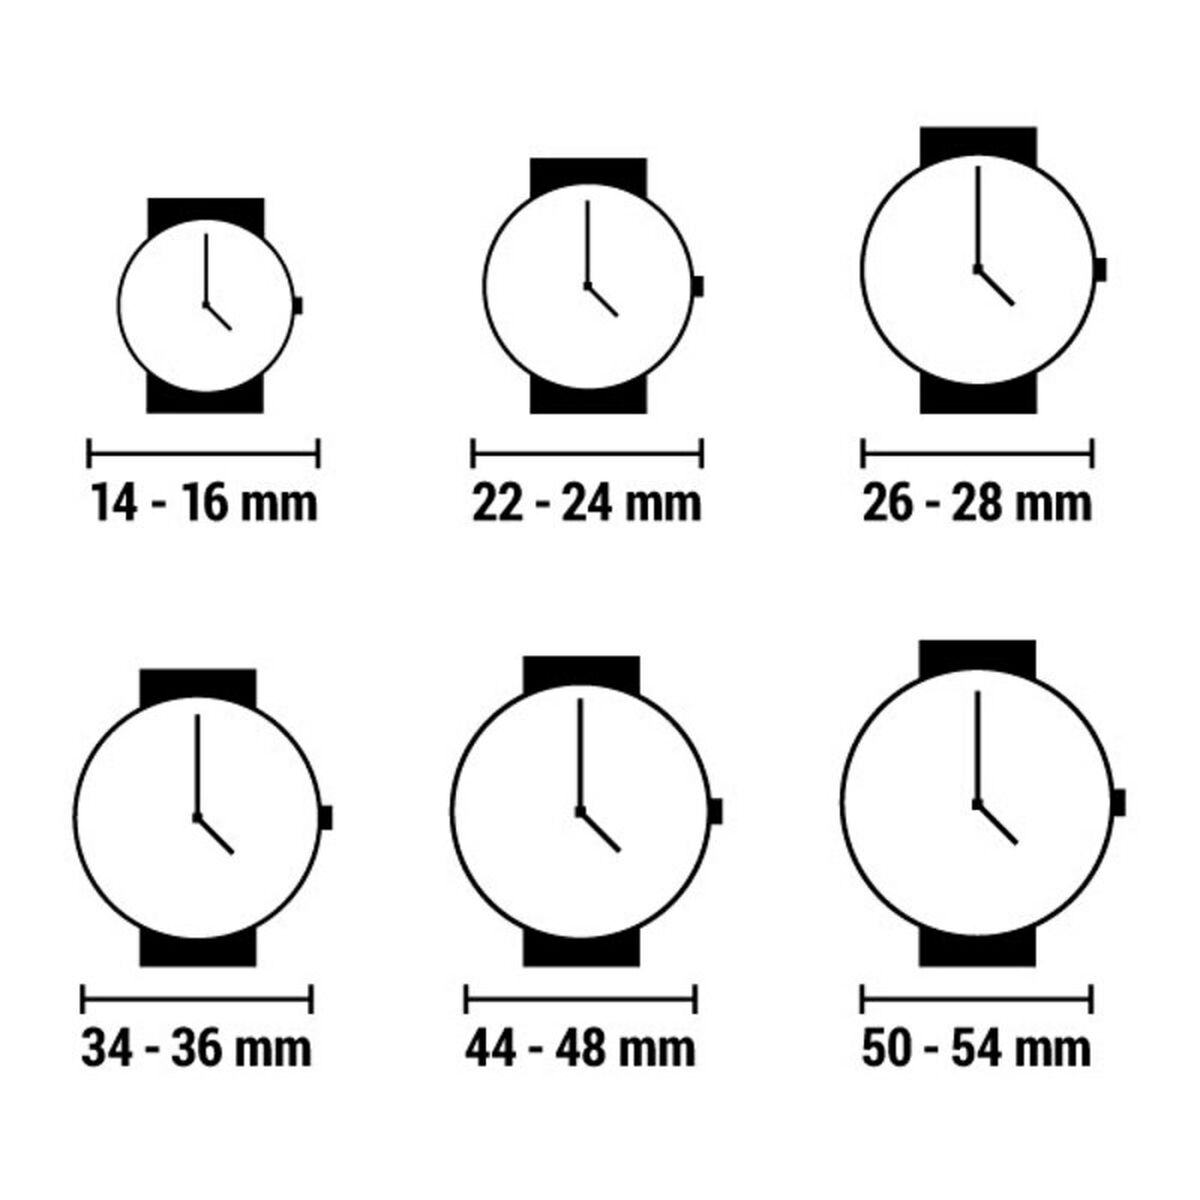 Horloge Dames Radiant RA432602 (Ø 34 mm)